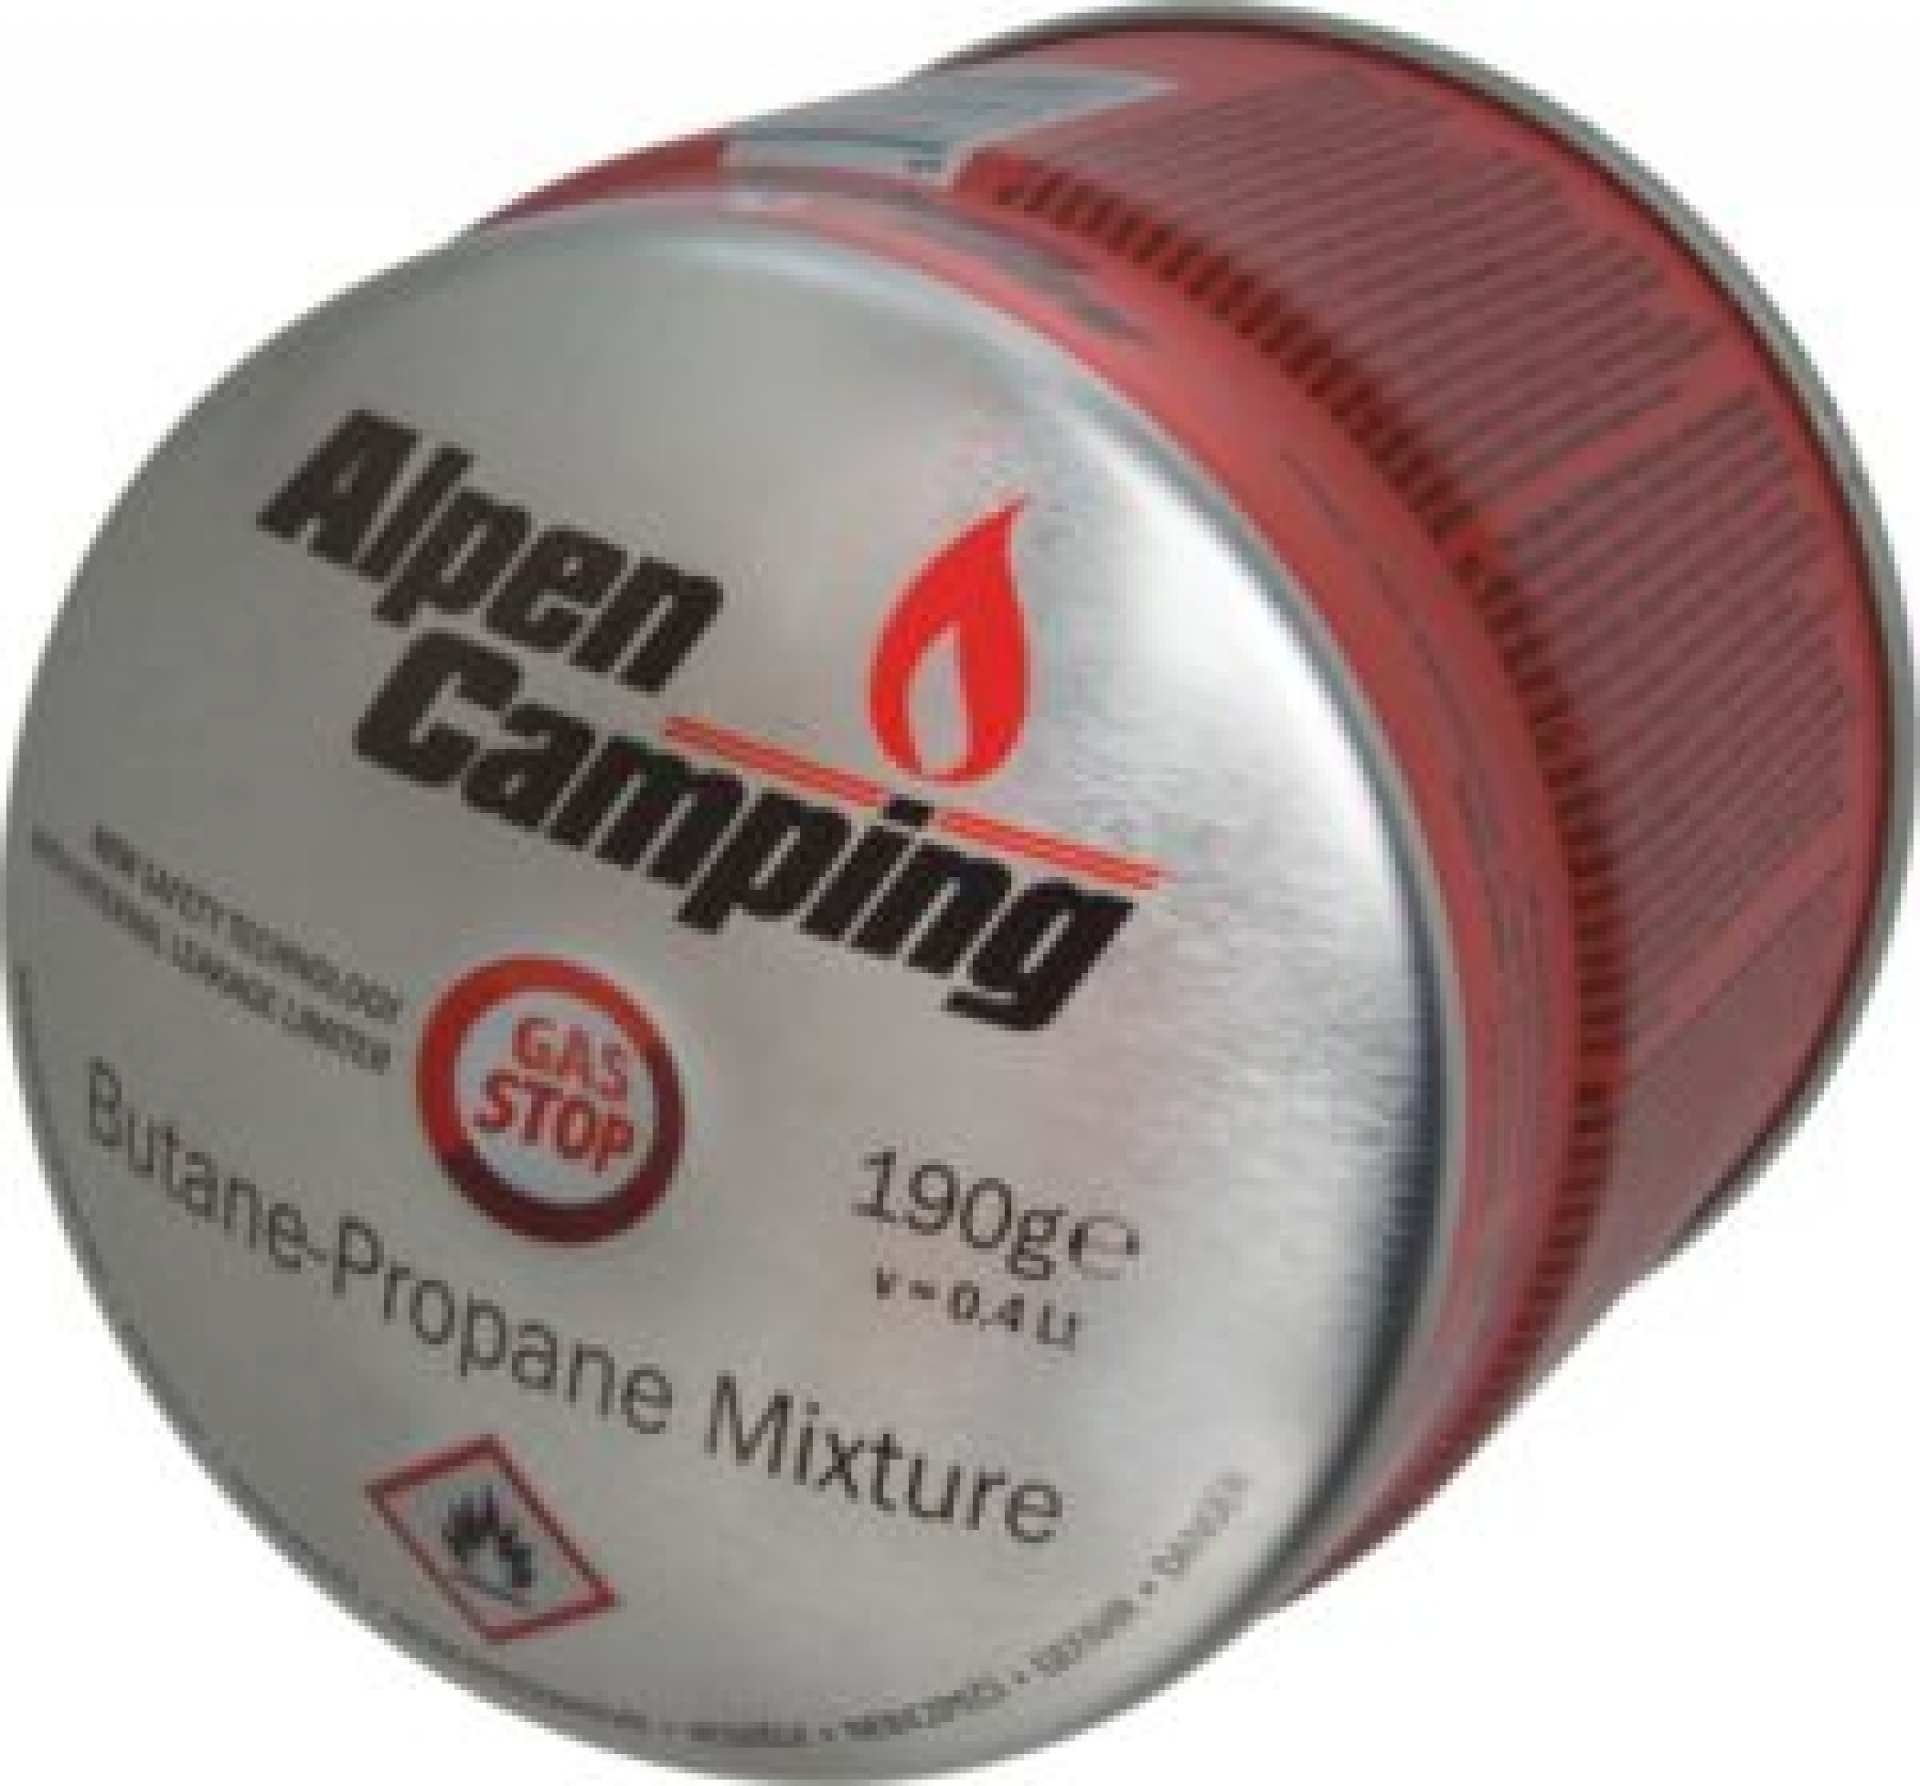 Alpen Camping - Cartucho de Gas Perforable tipo 200 / 190g